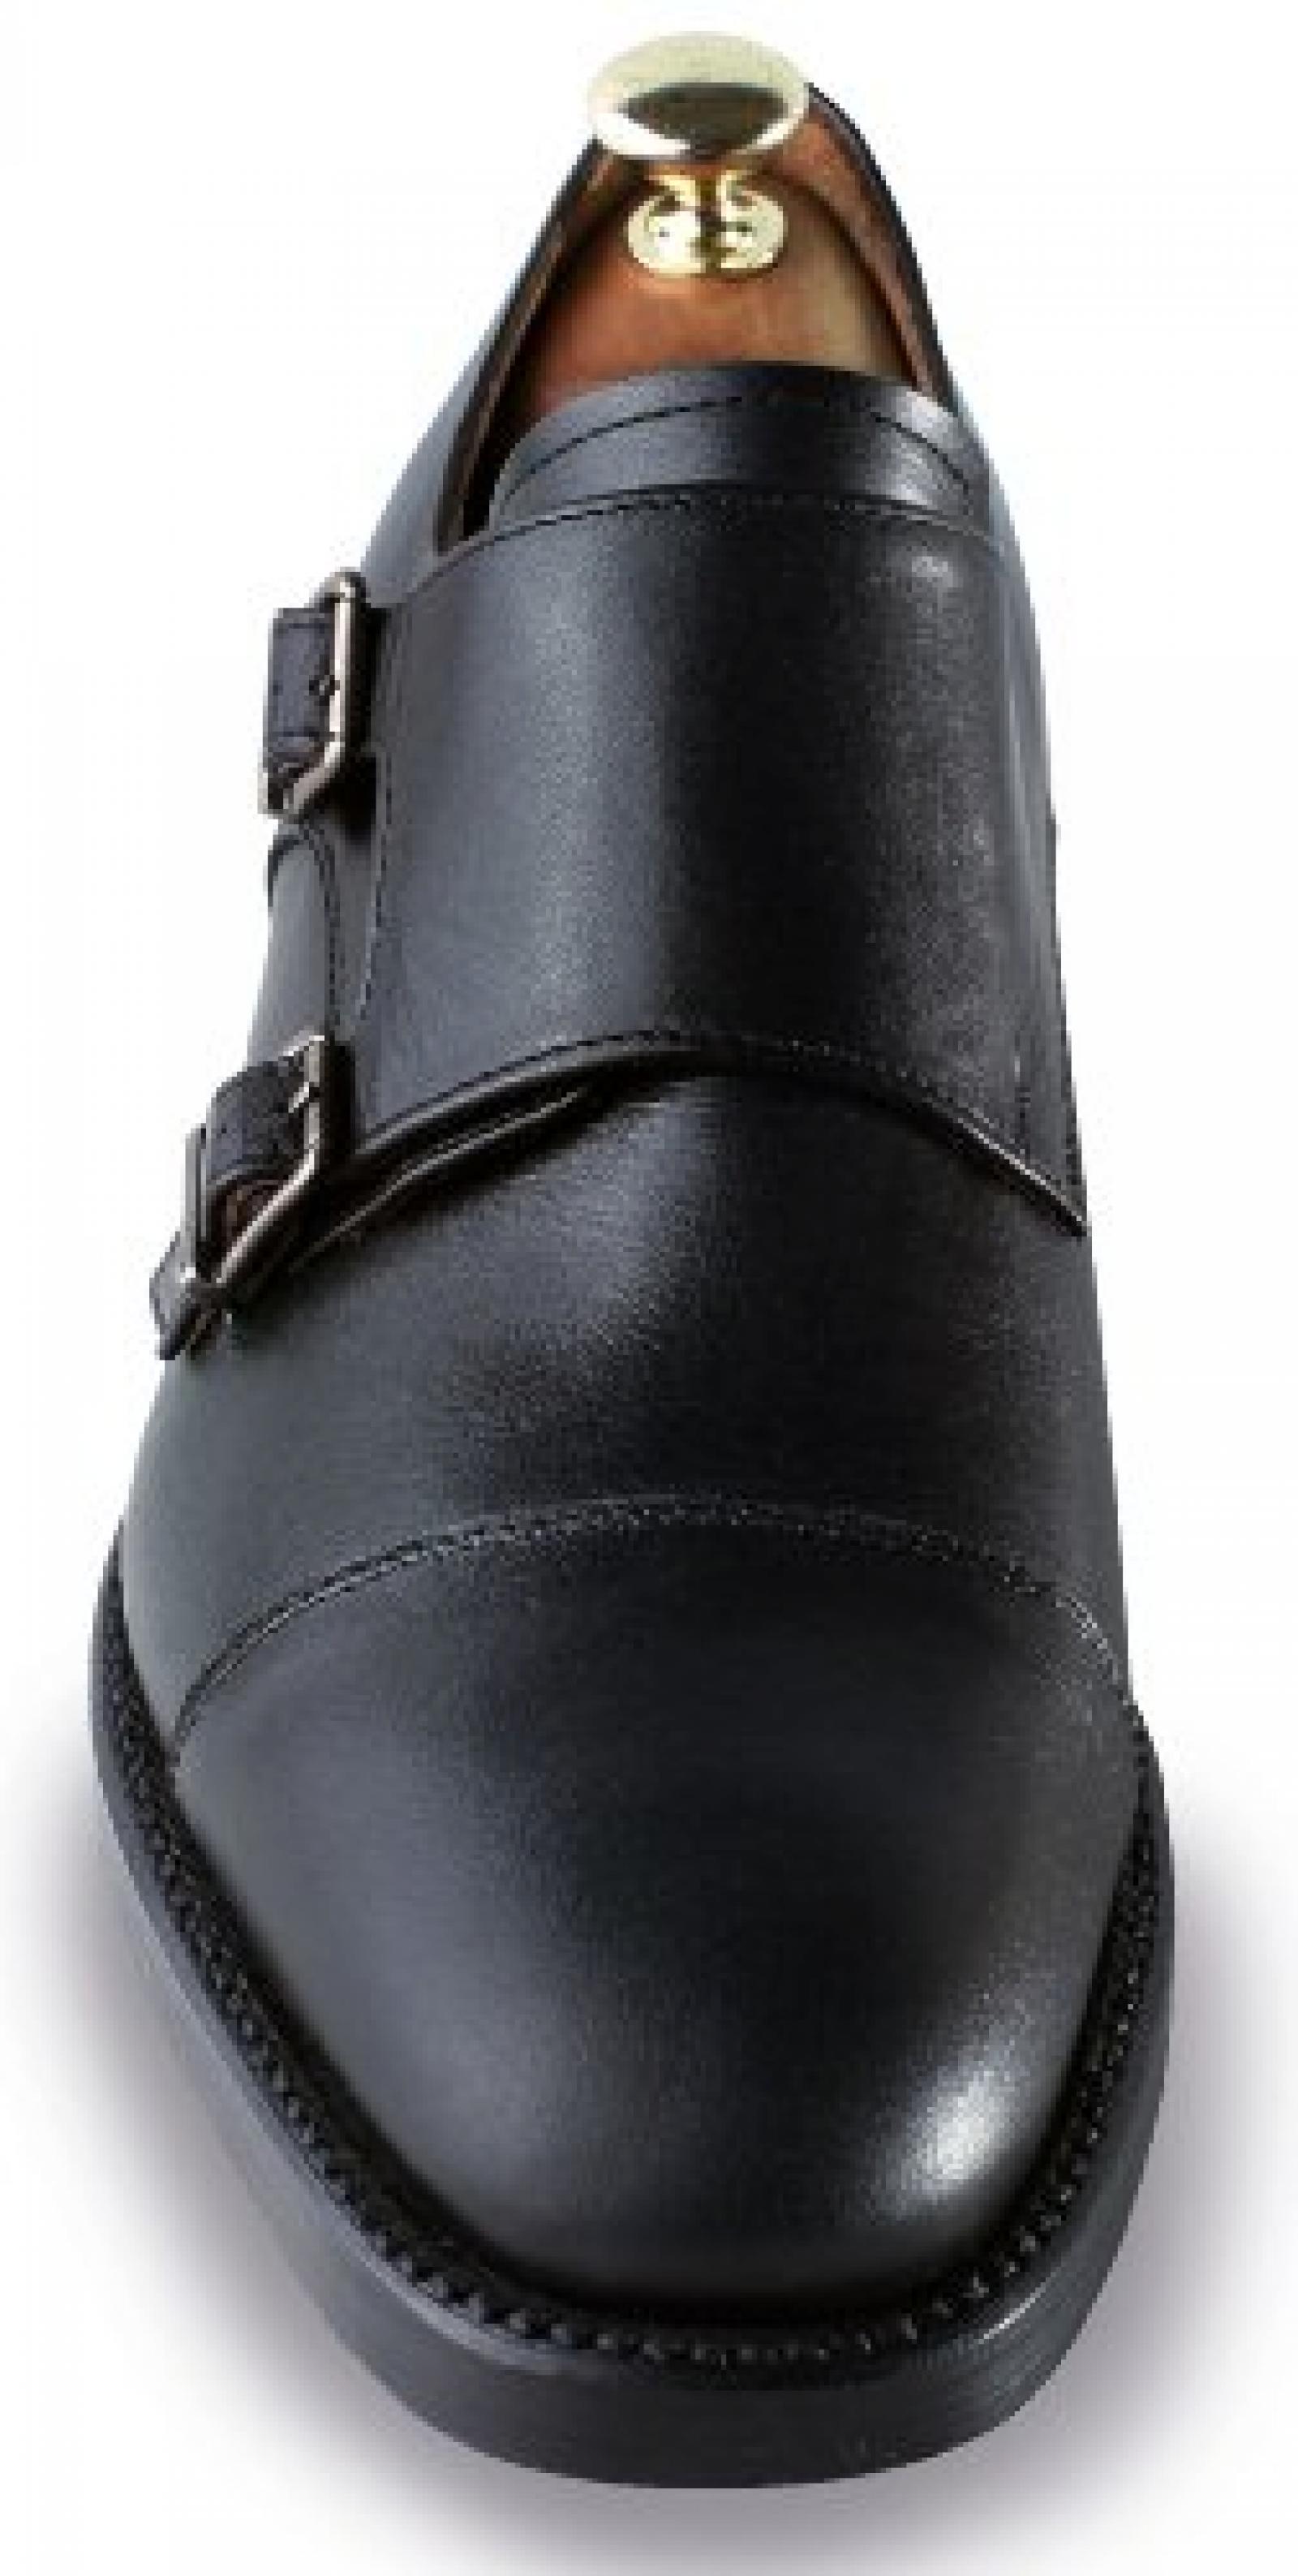 Masaltos - Schuhe für Männer erhöhen auf unsichtbare Weise Ihre Körpergrösse bis zu 7 cm. Modell Bristol 